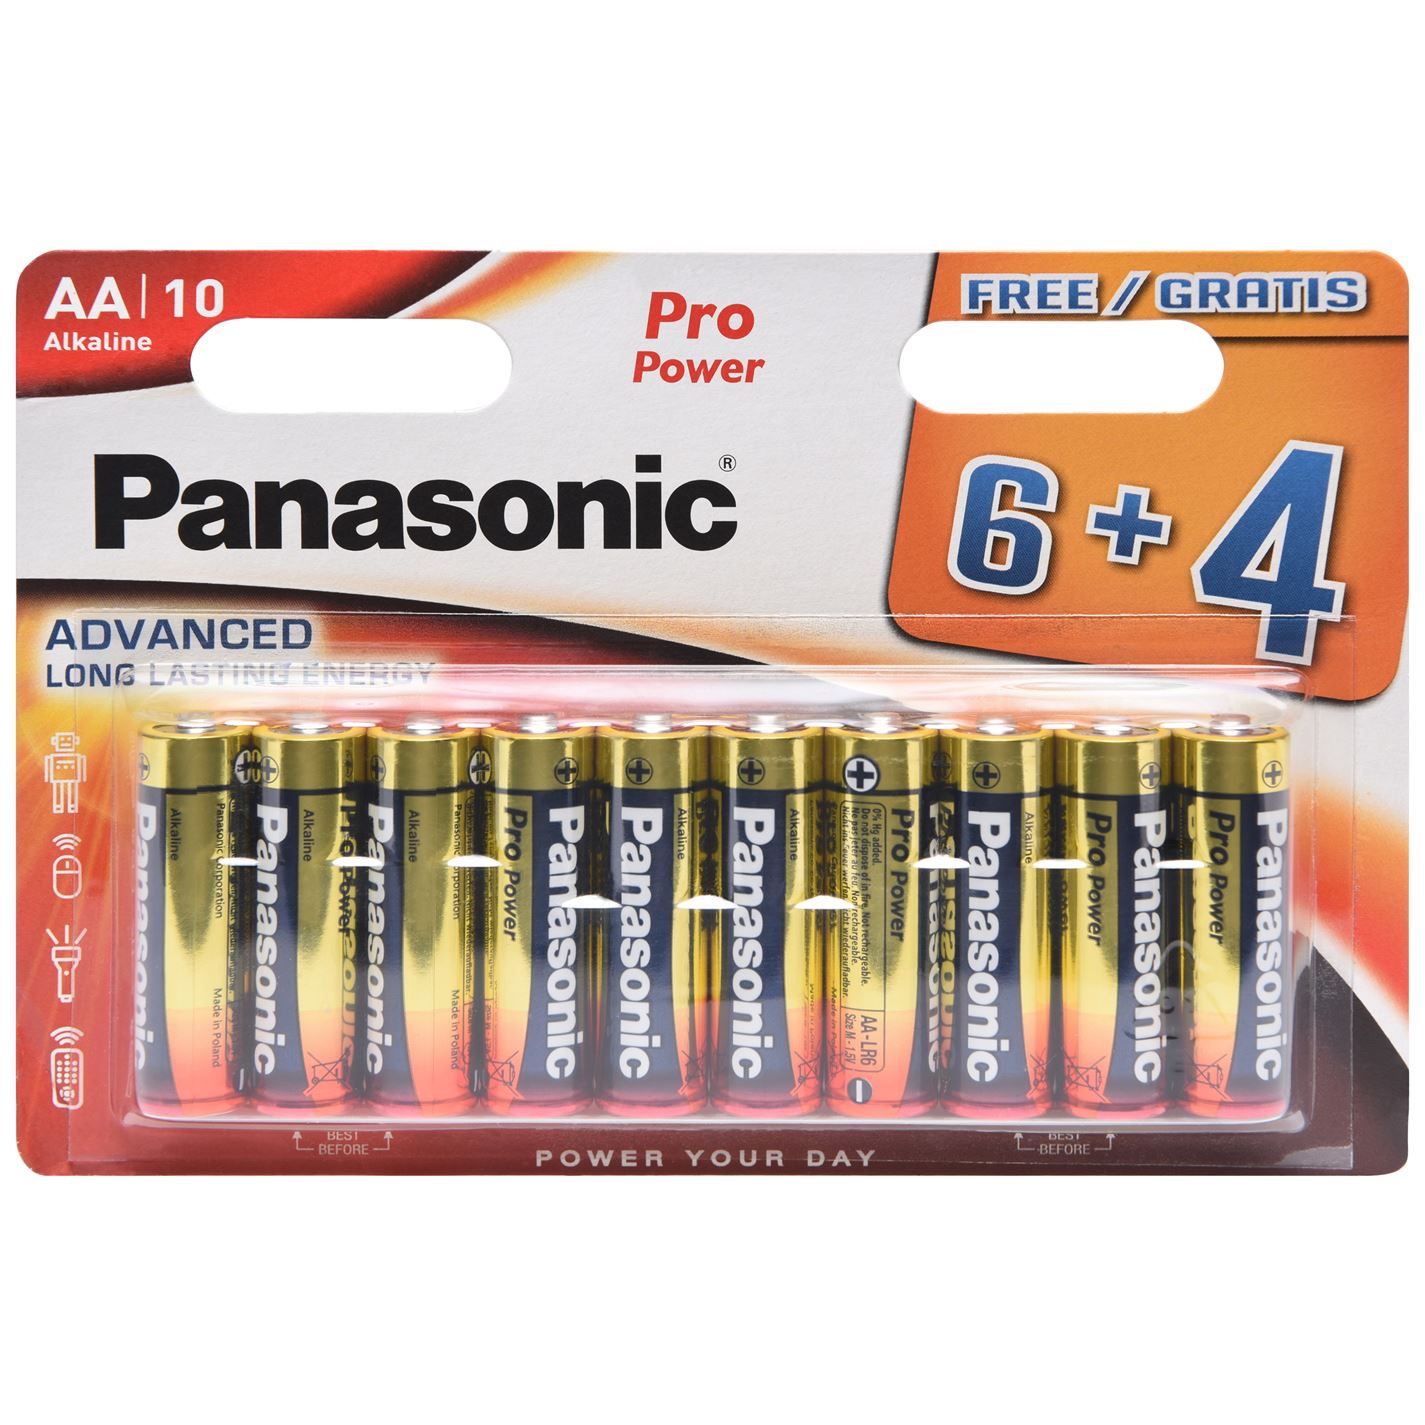 Panasonic Pro AA 6 plus 4 Free